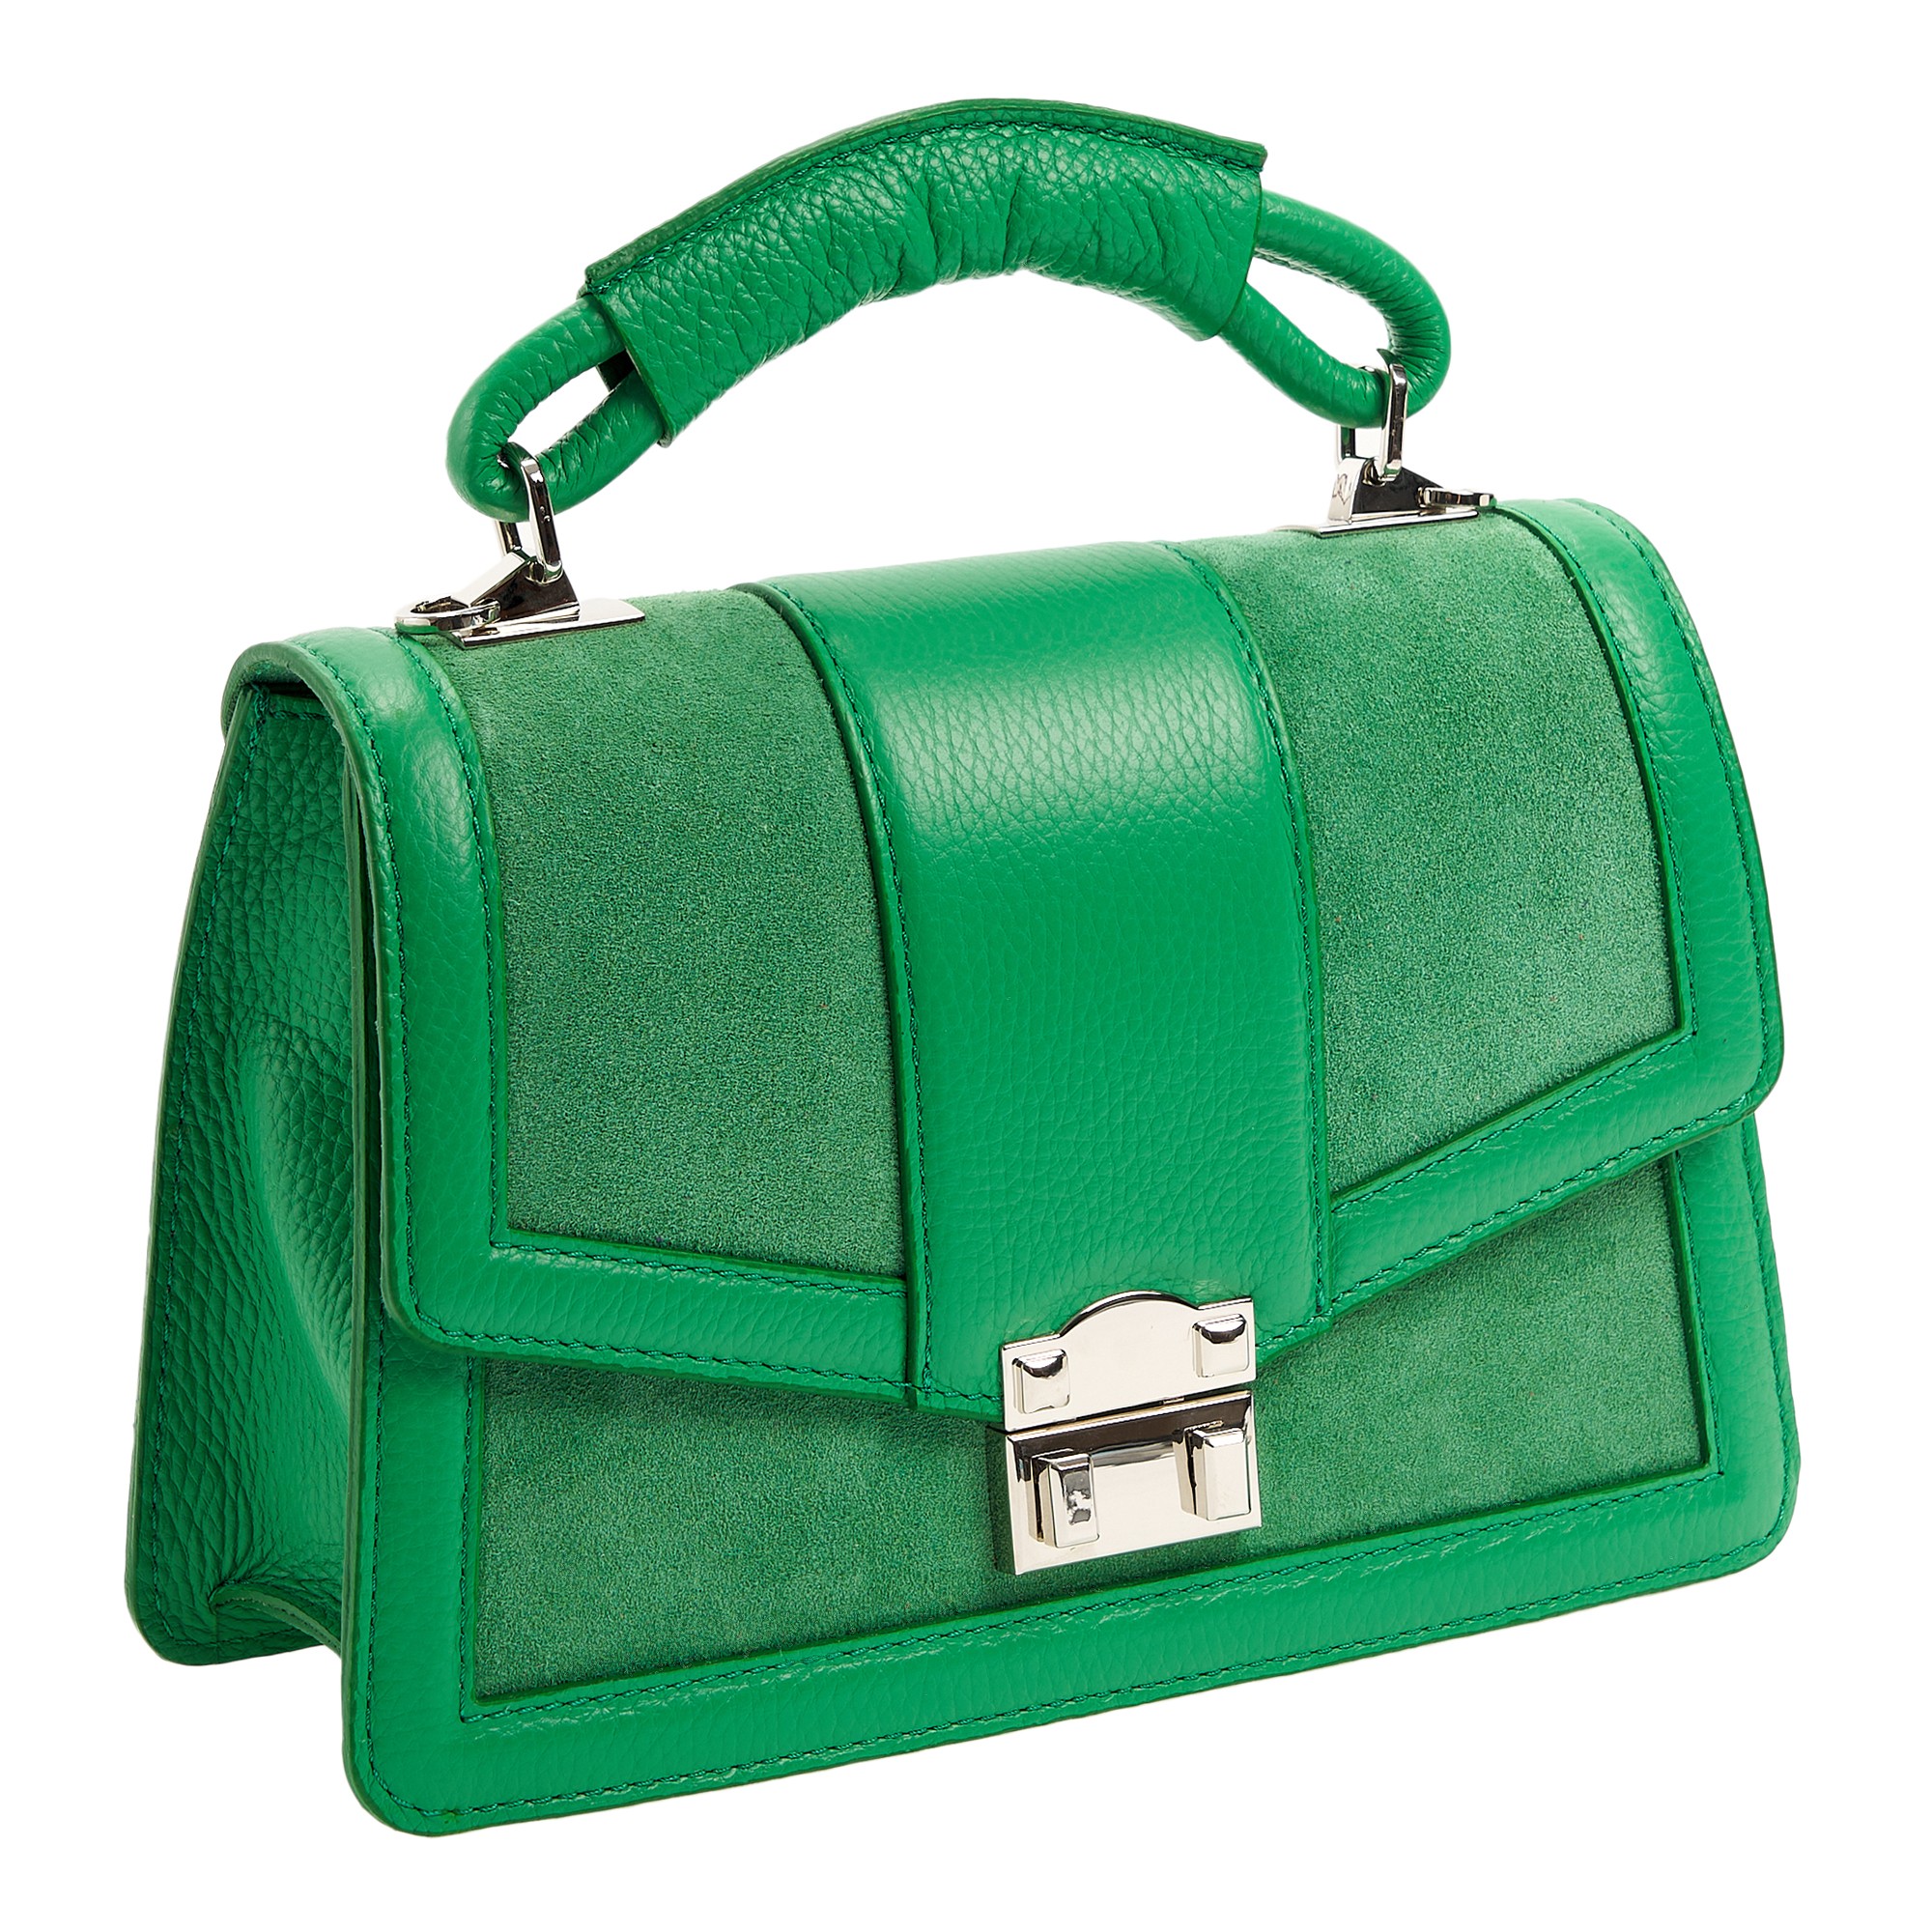 Др.Коффер 50454SV-65 сумка женская, цвет зеленый - фото 1